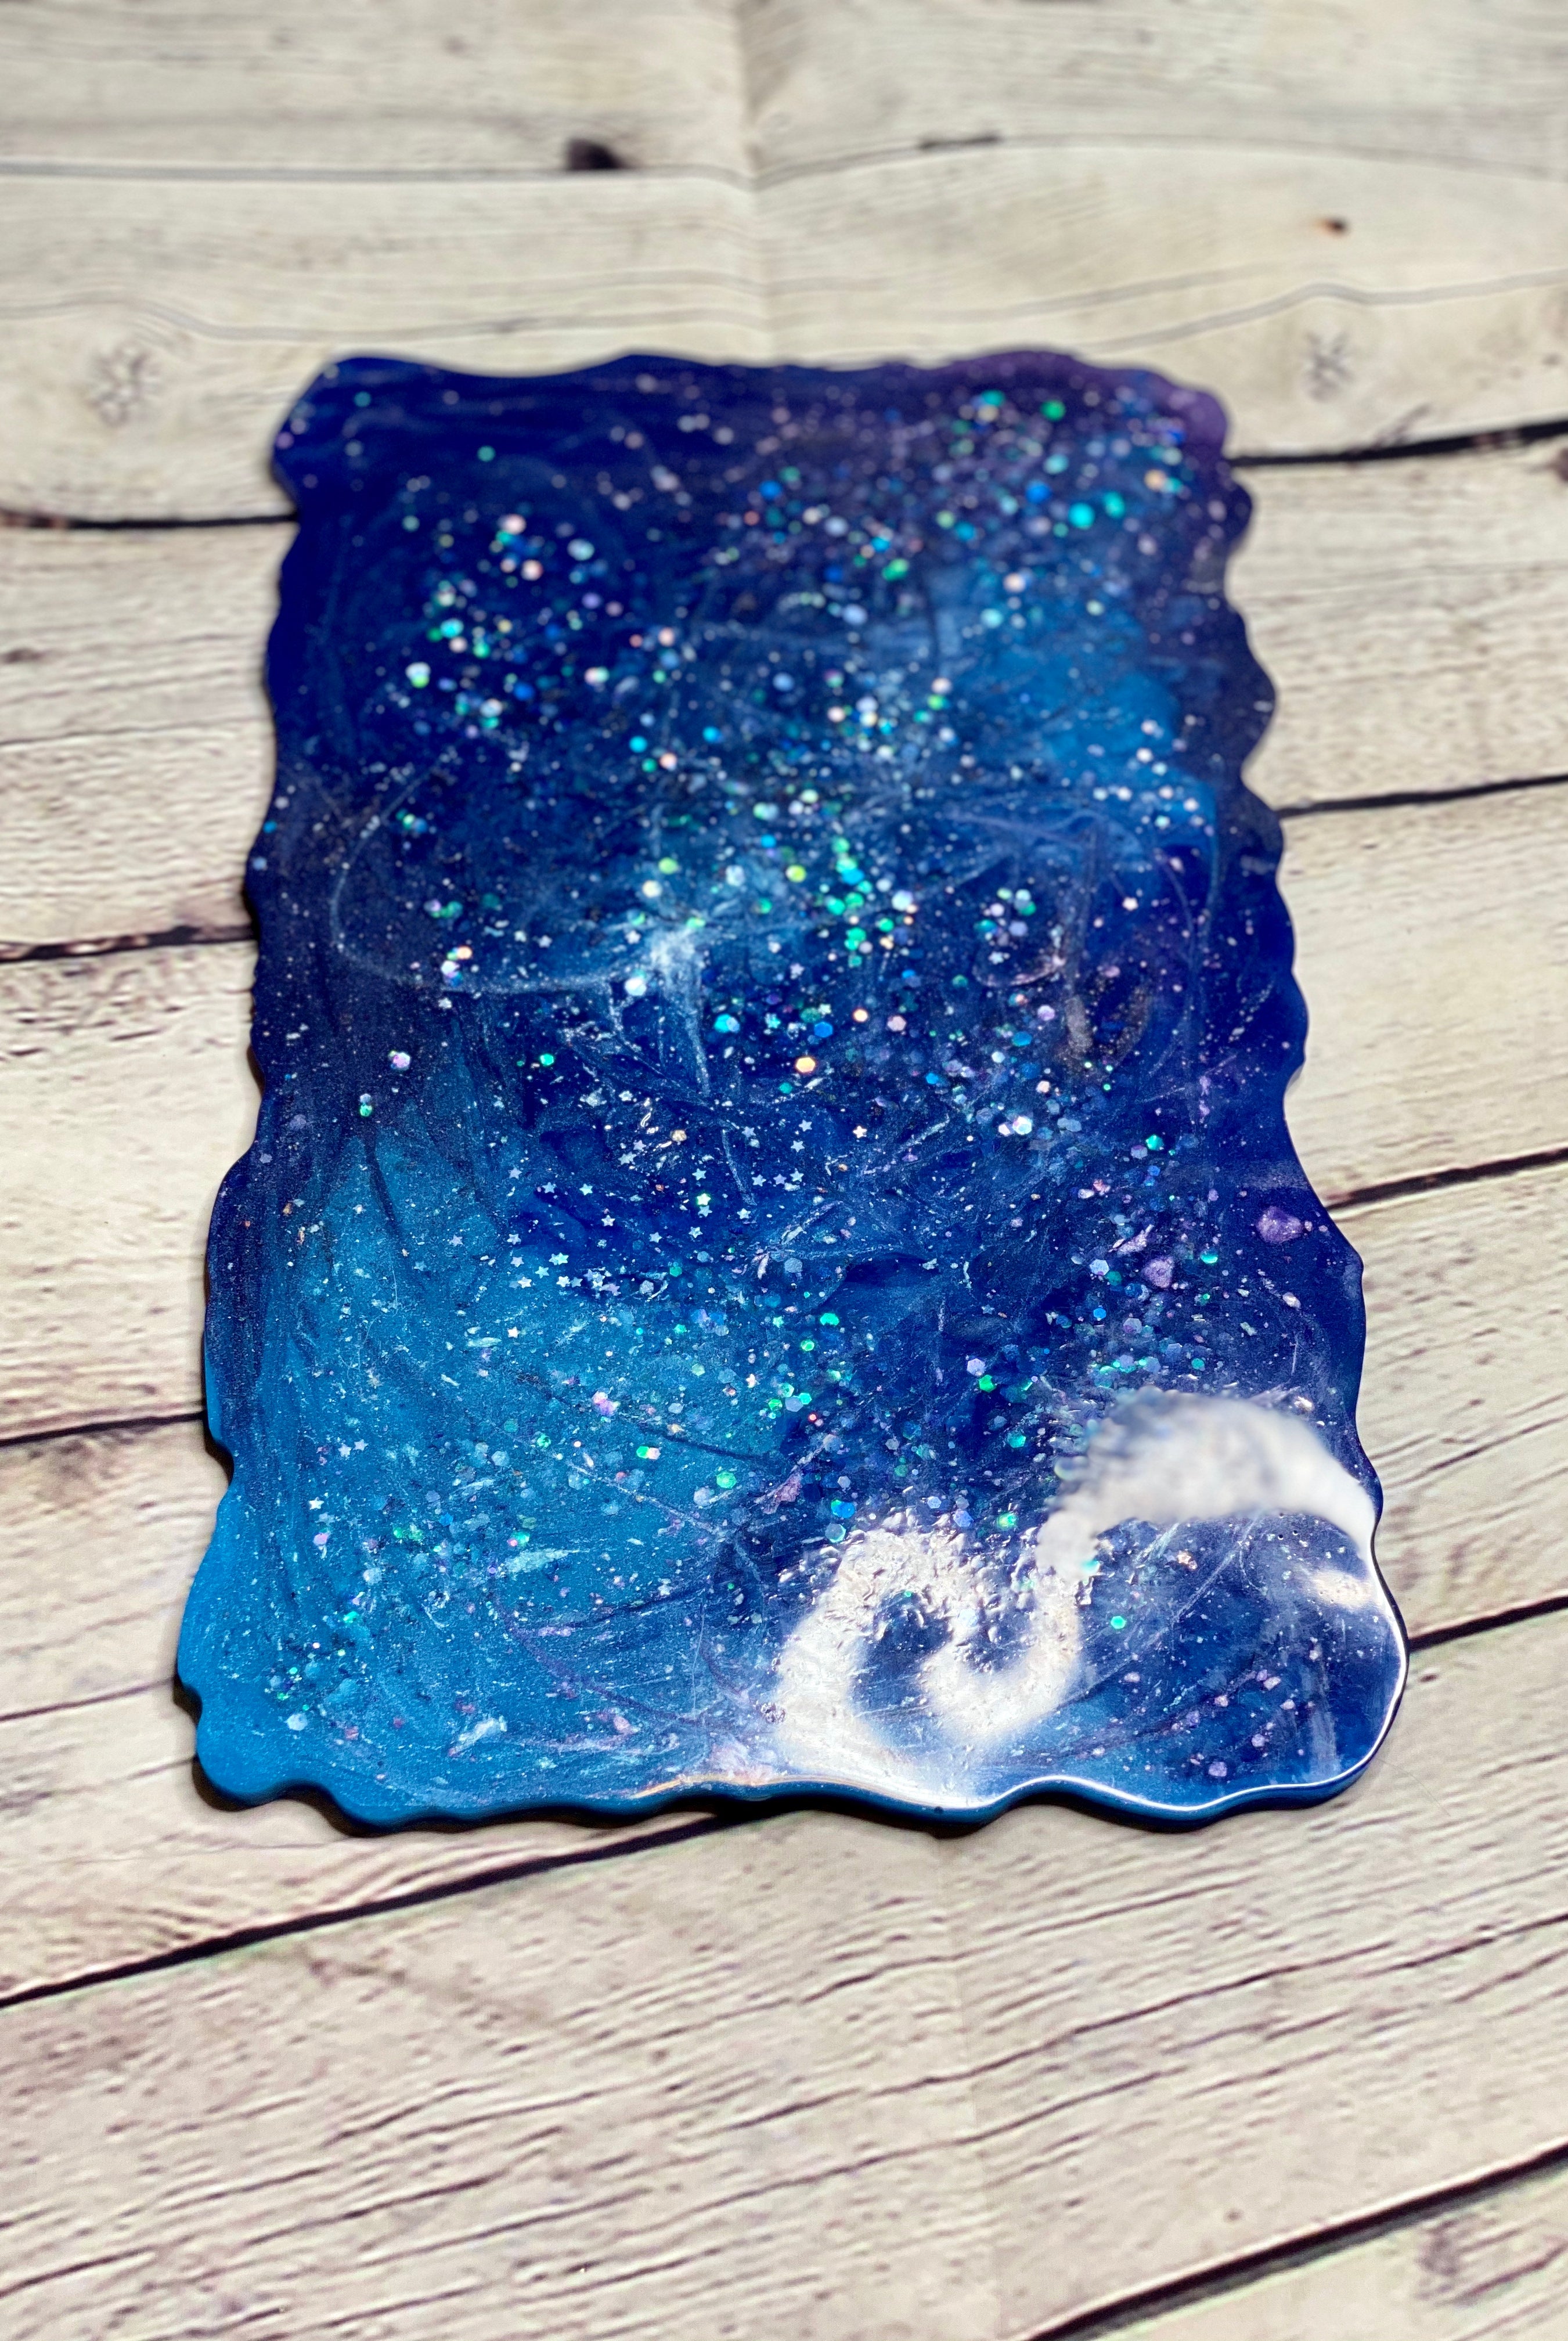 Midnight Blue Galaxy Vanity Tray Decorative Trays